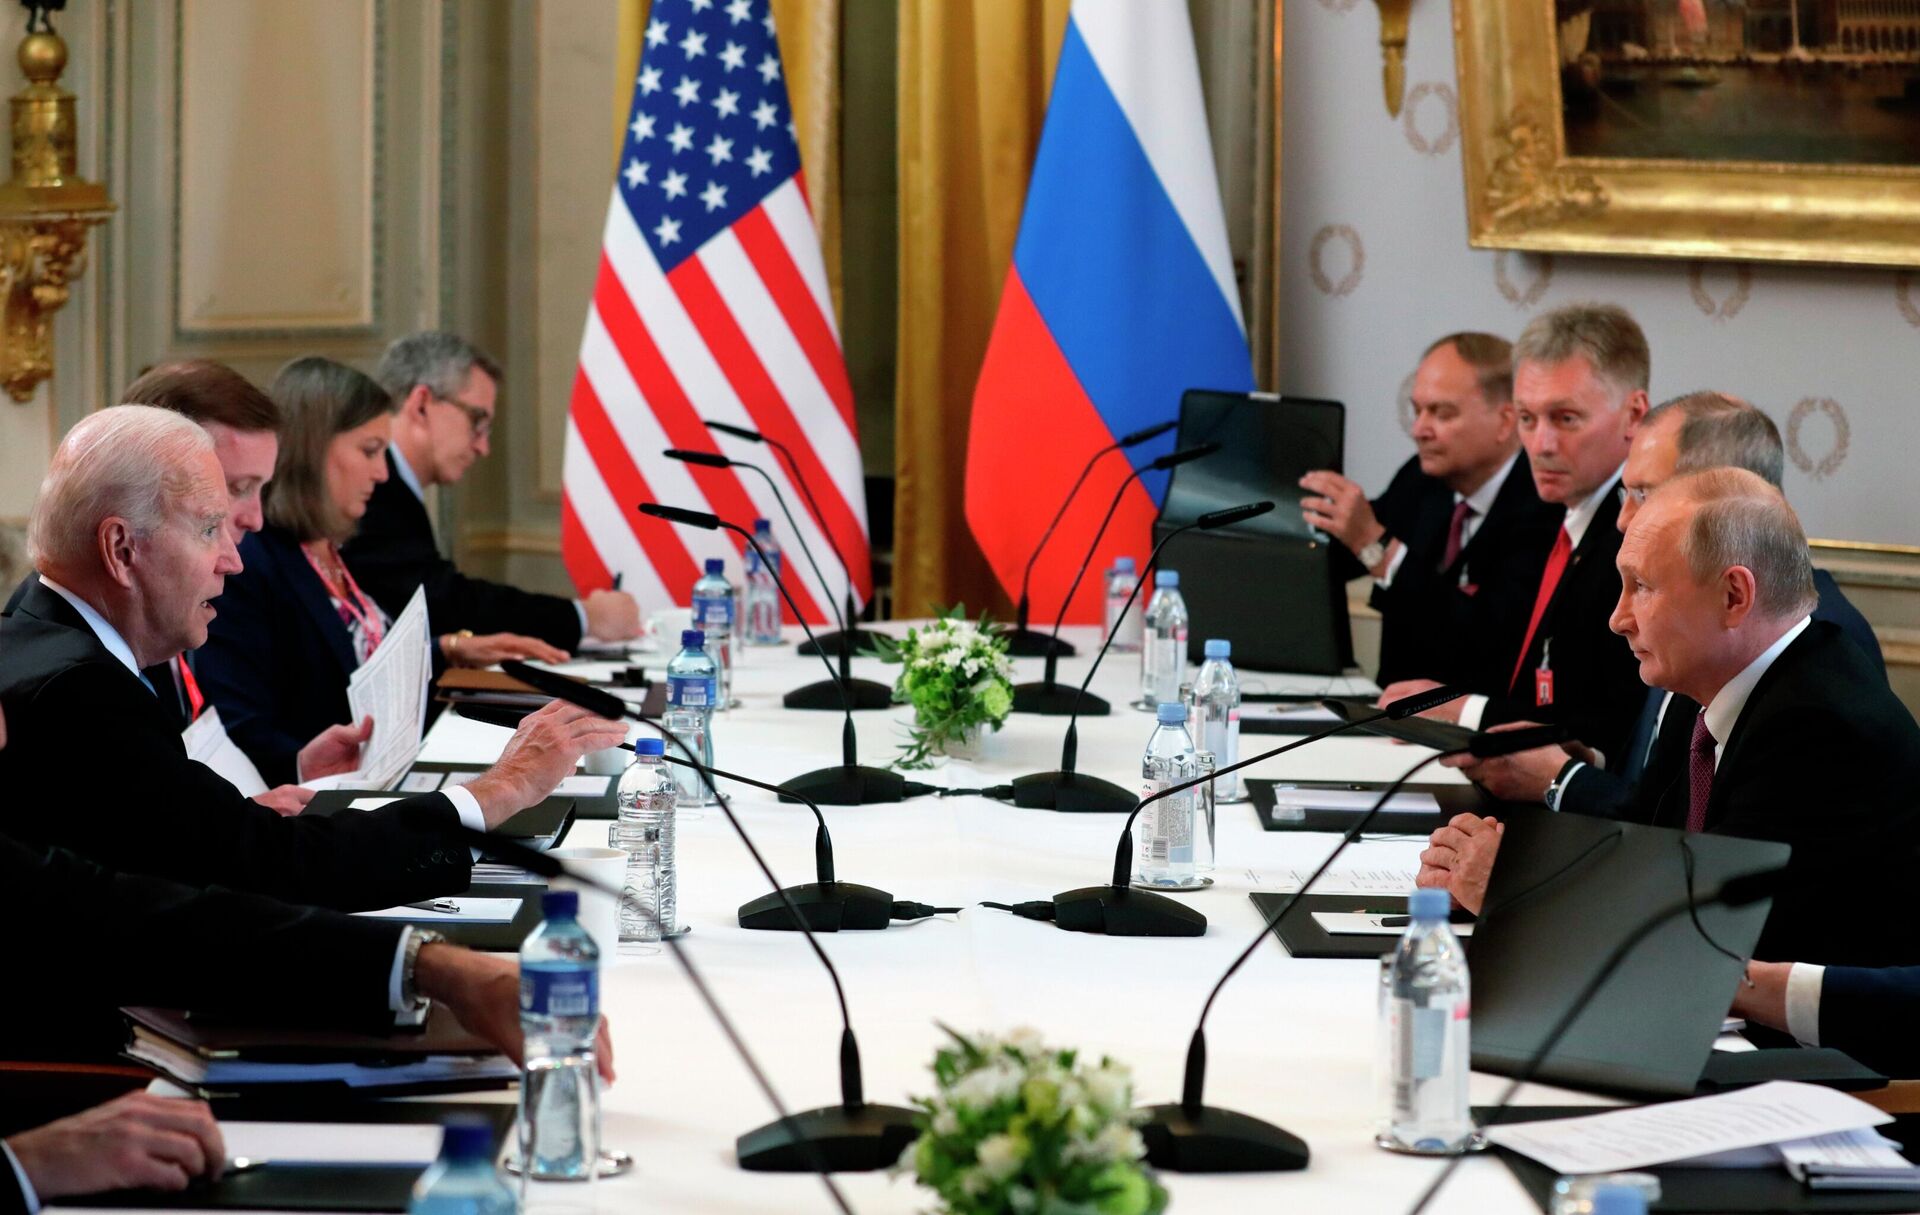 Участники российско-американских переговоров в расширенном составе на саммите в Женеве - Sputnik Латвия, 1920, 17.06.2021